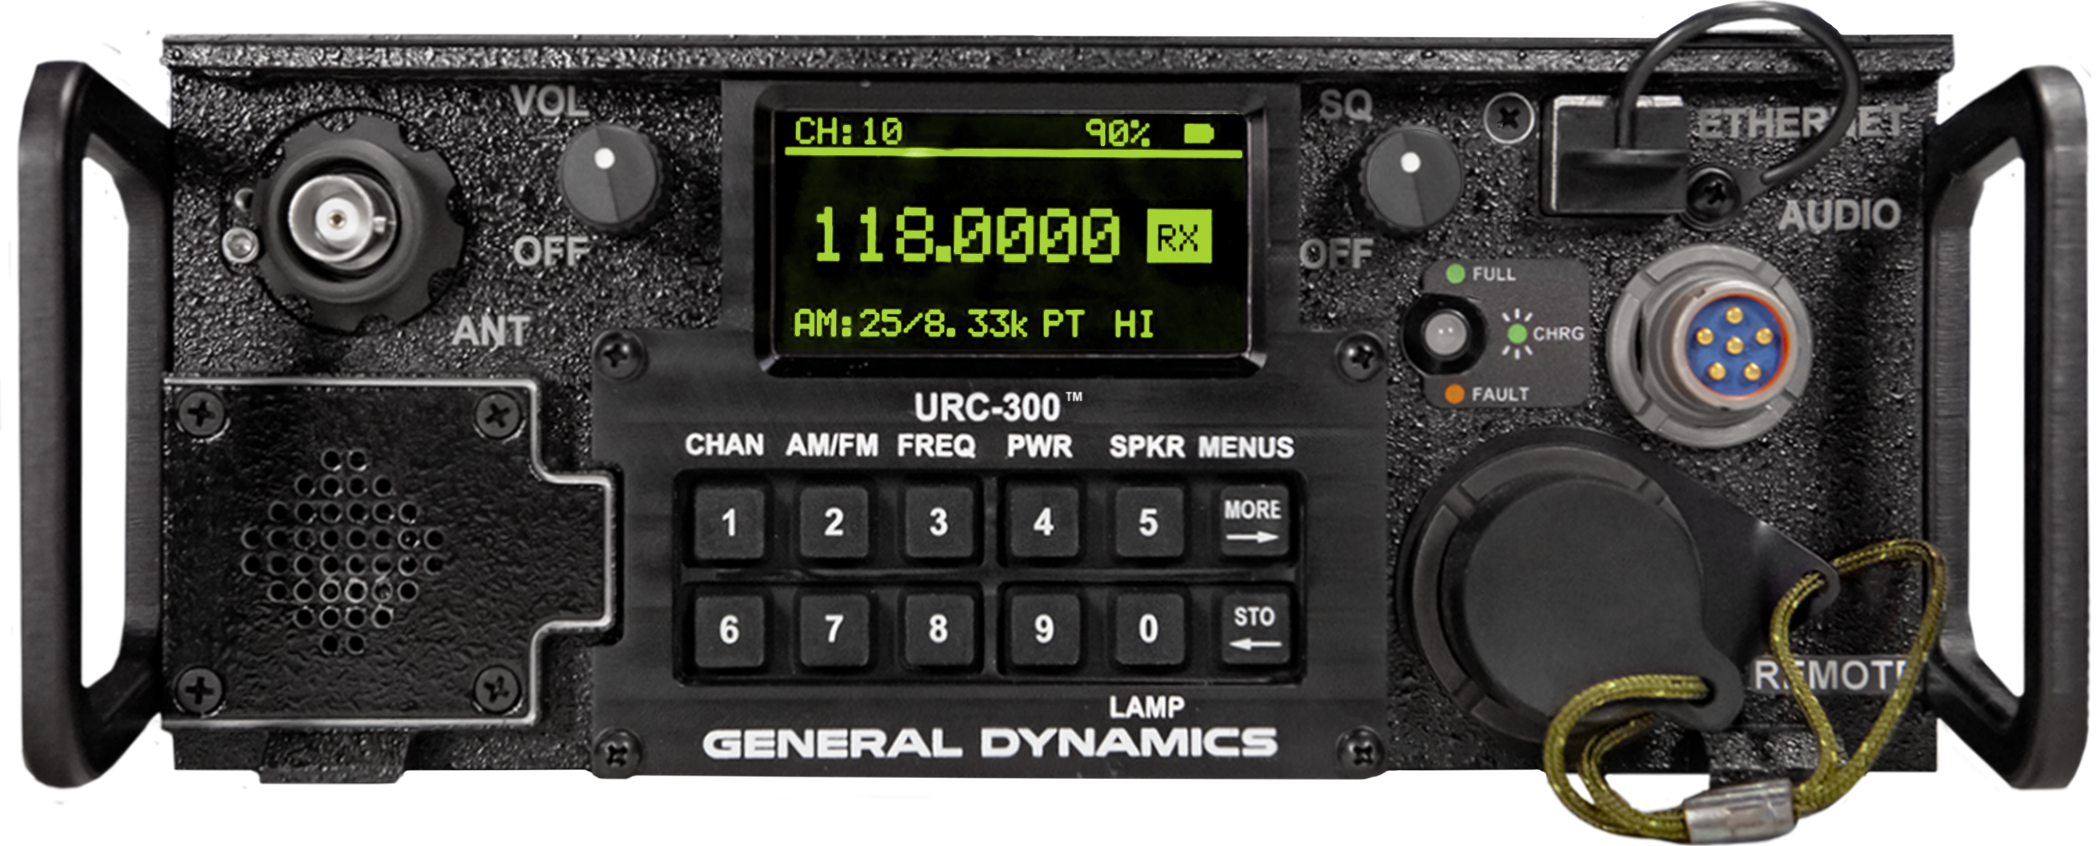 URC-300™ Software-Defined Radio